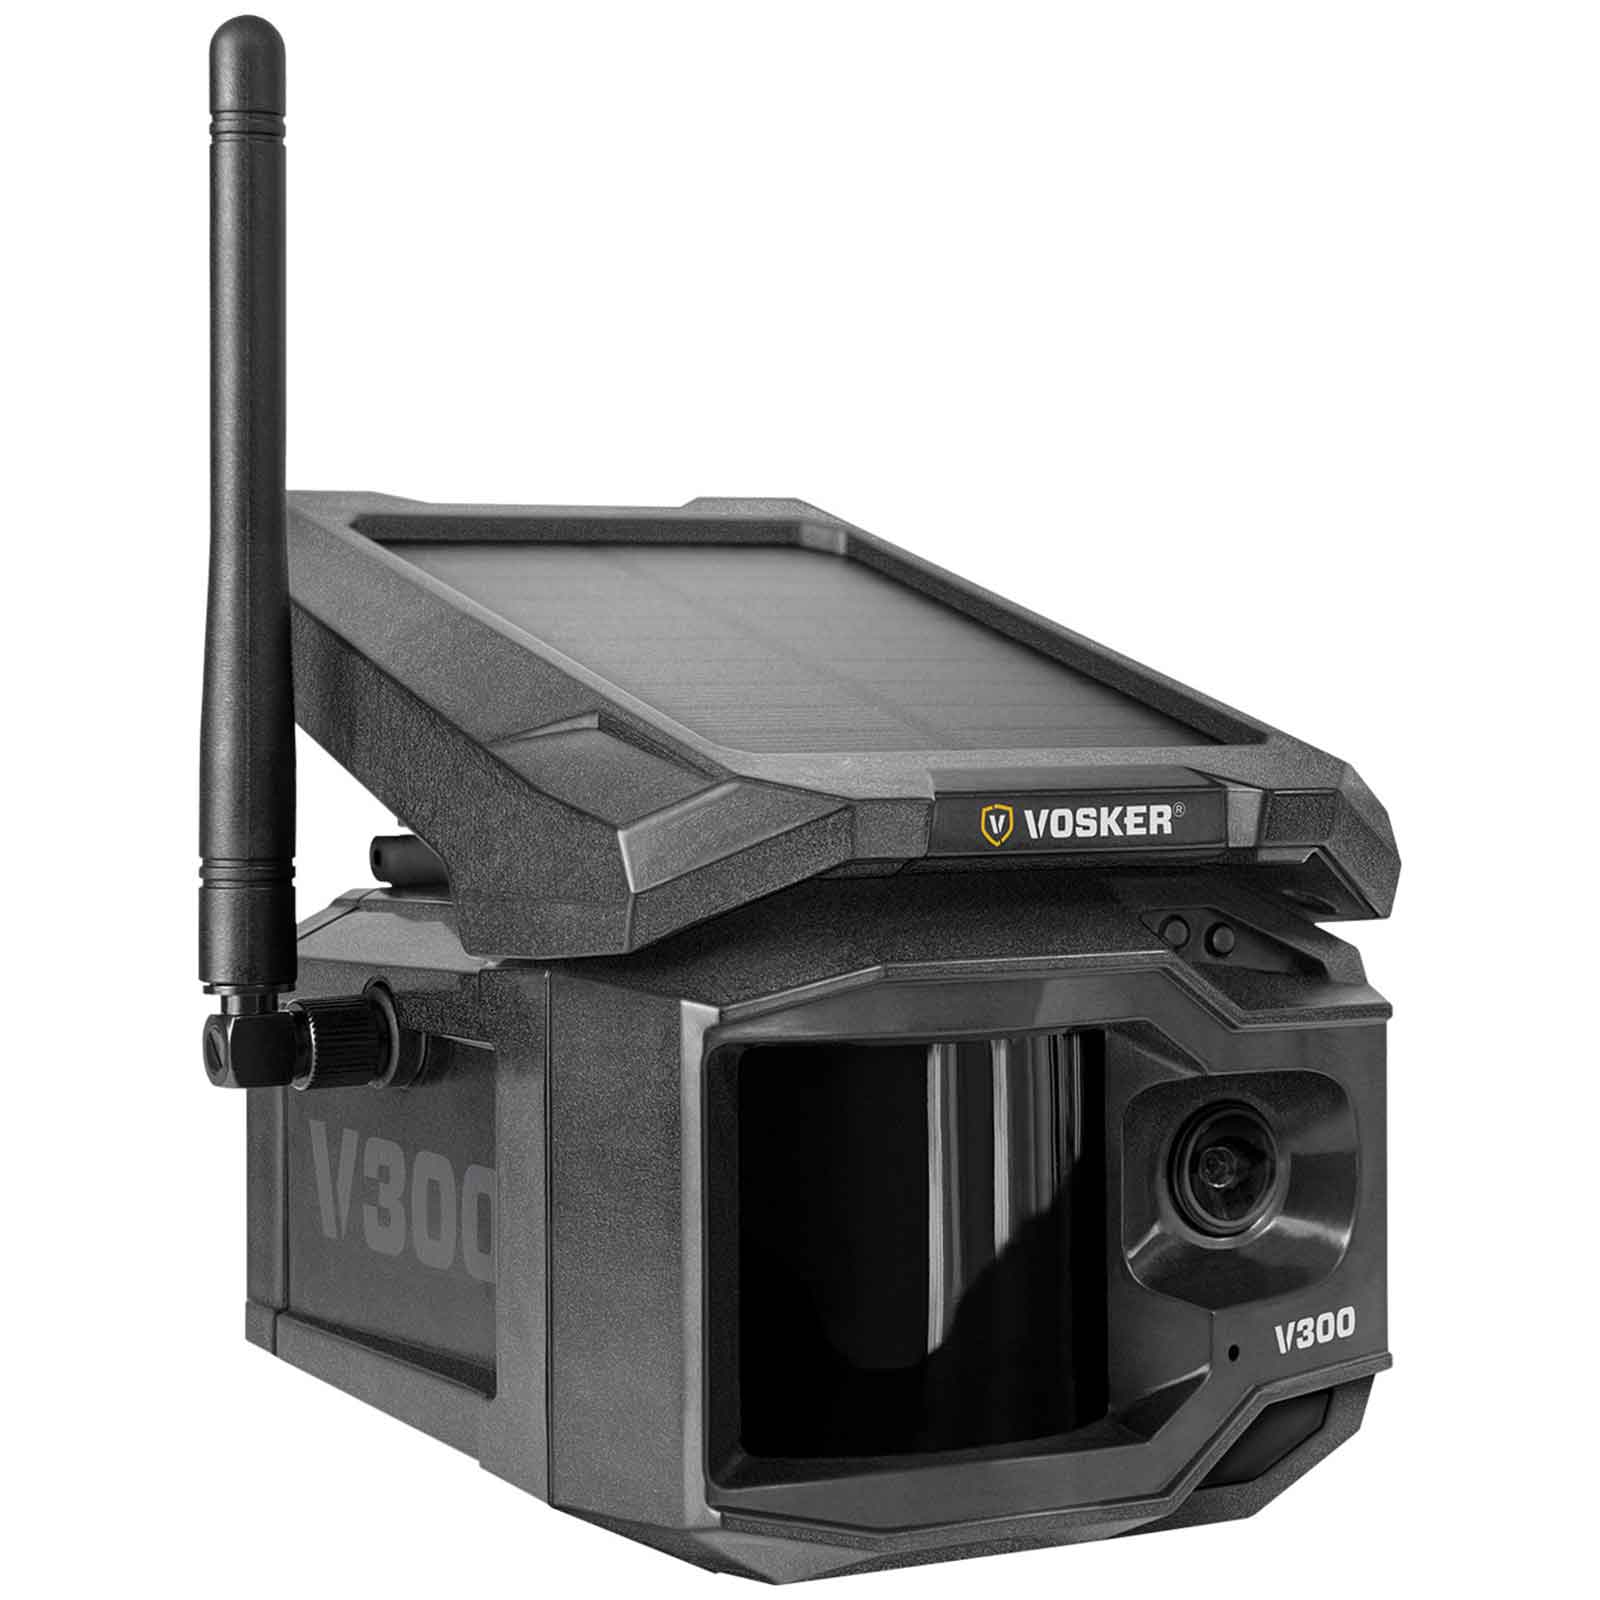 Vosker V300 Überwachungskamera + Solar Powerbank + Basic Jährlich